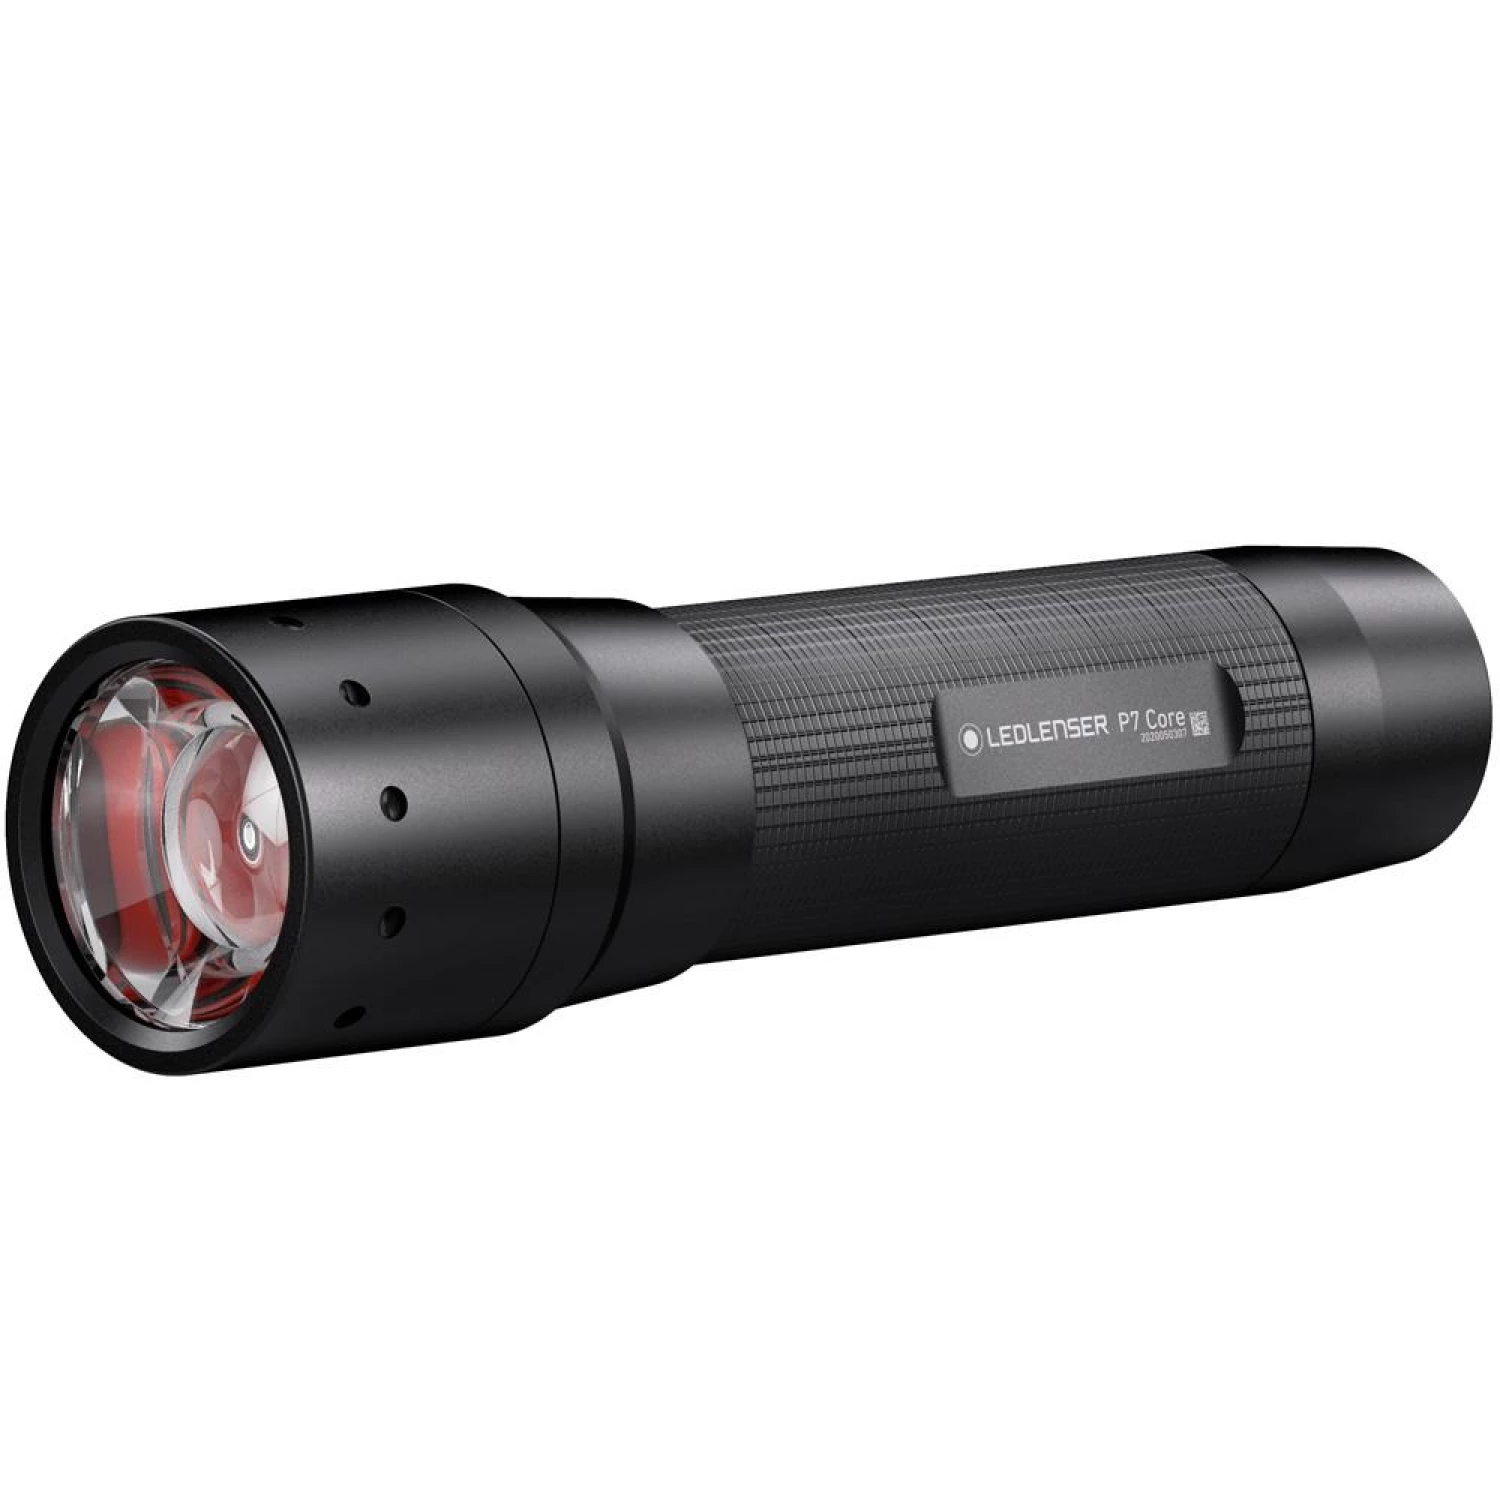 Фонарь светодиодный LED Lenser P7 Core, 450 лм, аккумулятор